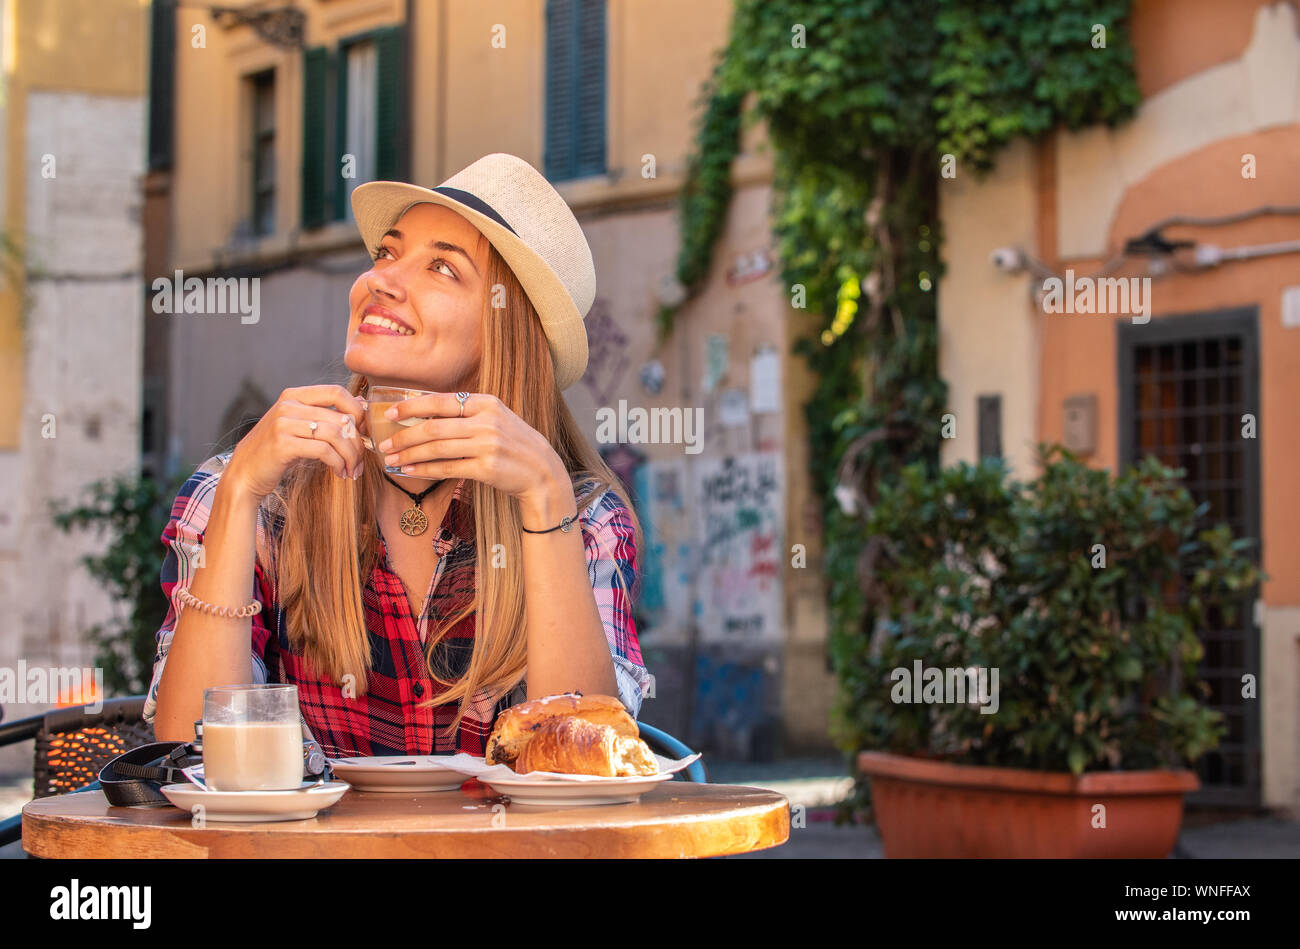 Jeune femme blonde aux yeux bleus, prendre le petit déjeuner dans un bar typiquement italien à l'extérieur dans le quartier historique de Trastevere, Rome, Italie. Cappuccino Banque D'Images